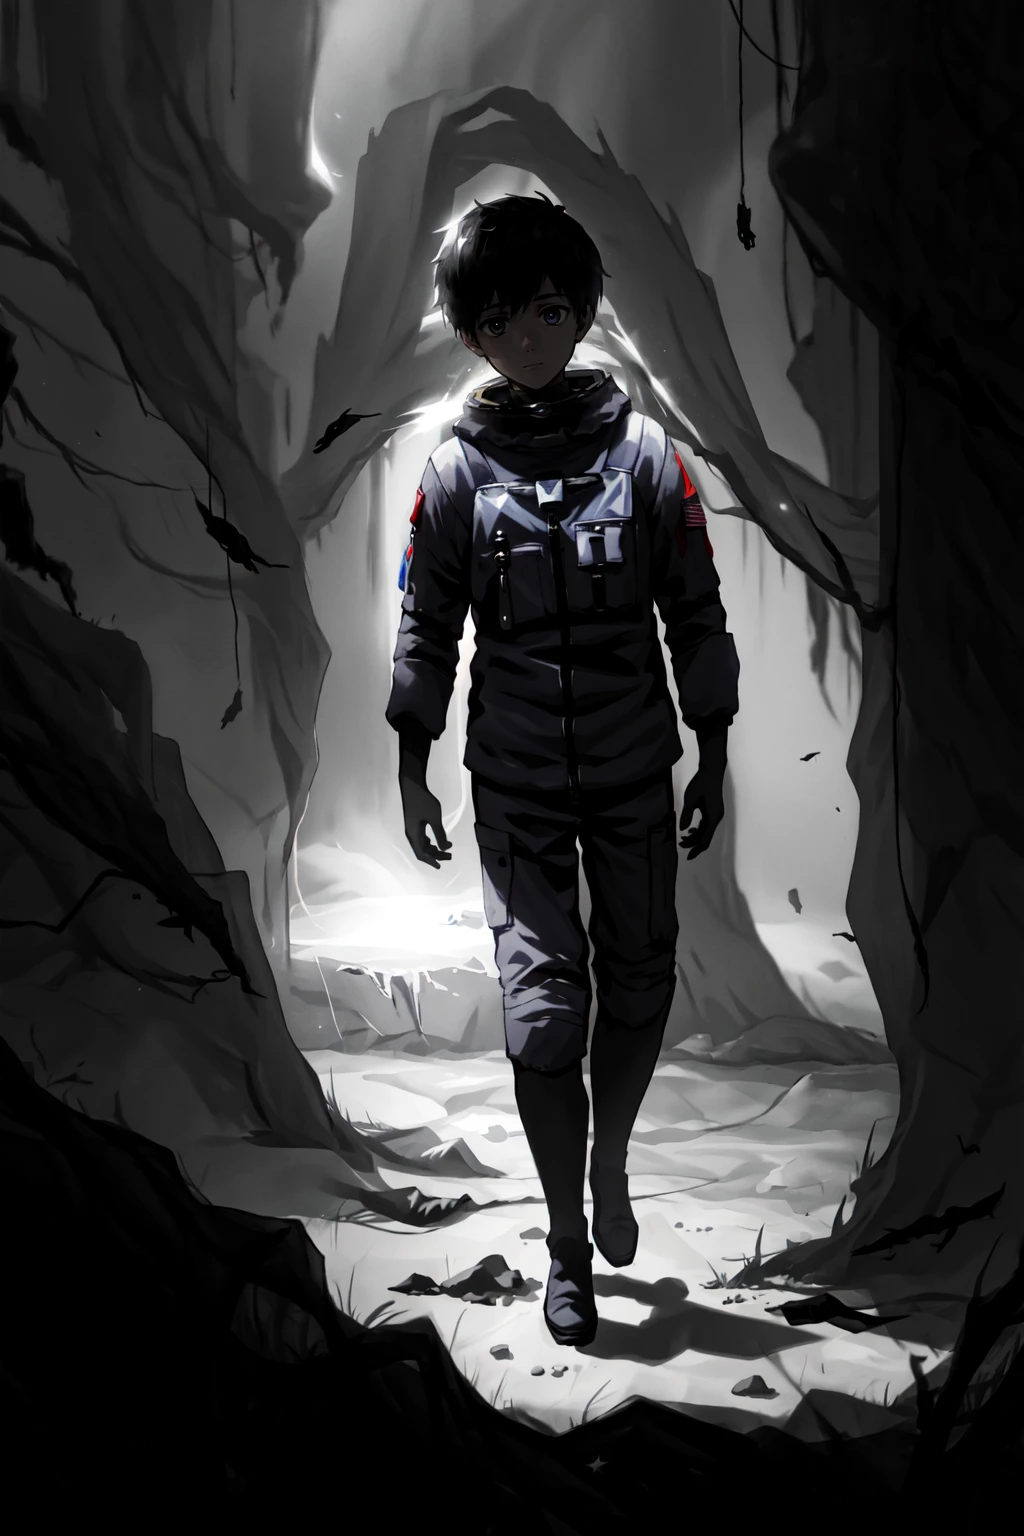 림코 스타일, 1남, 남성 집중, 달의 우주비행사, 우울한 특징, 한계 공포 공간, 극도의 빛과 그림자